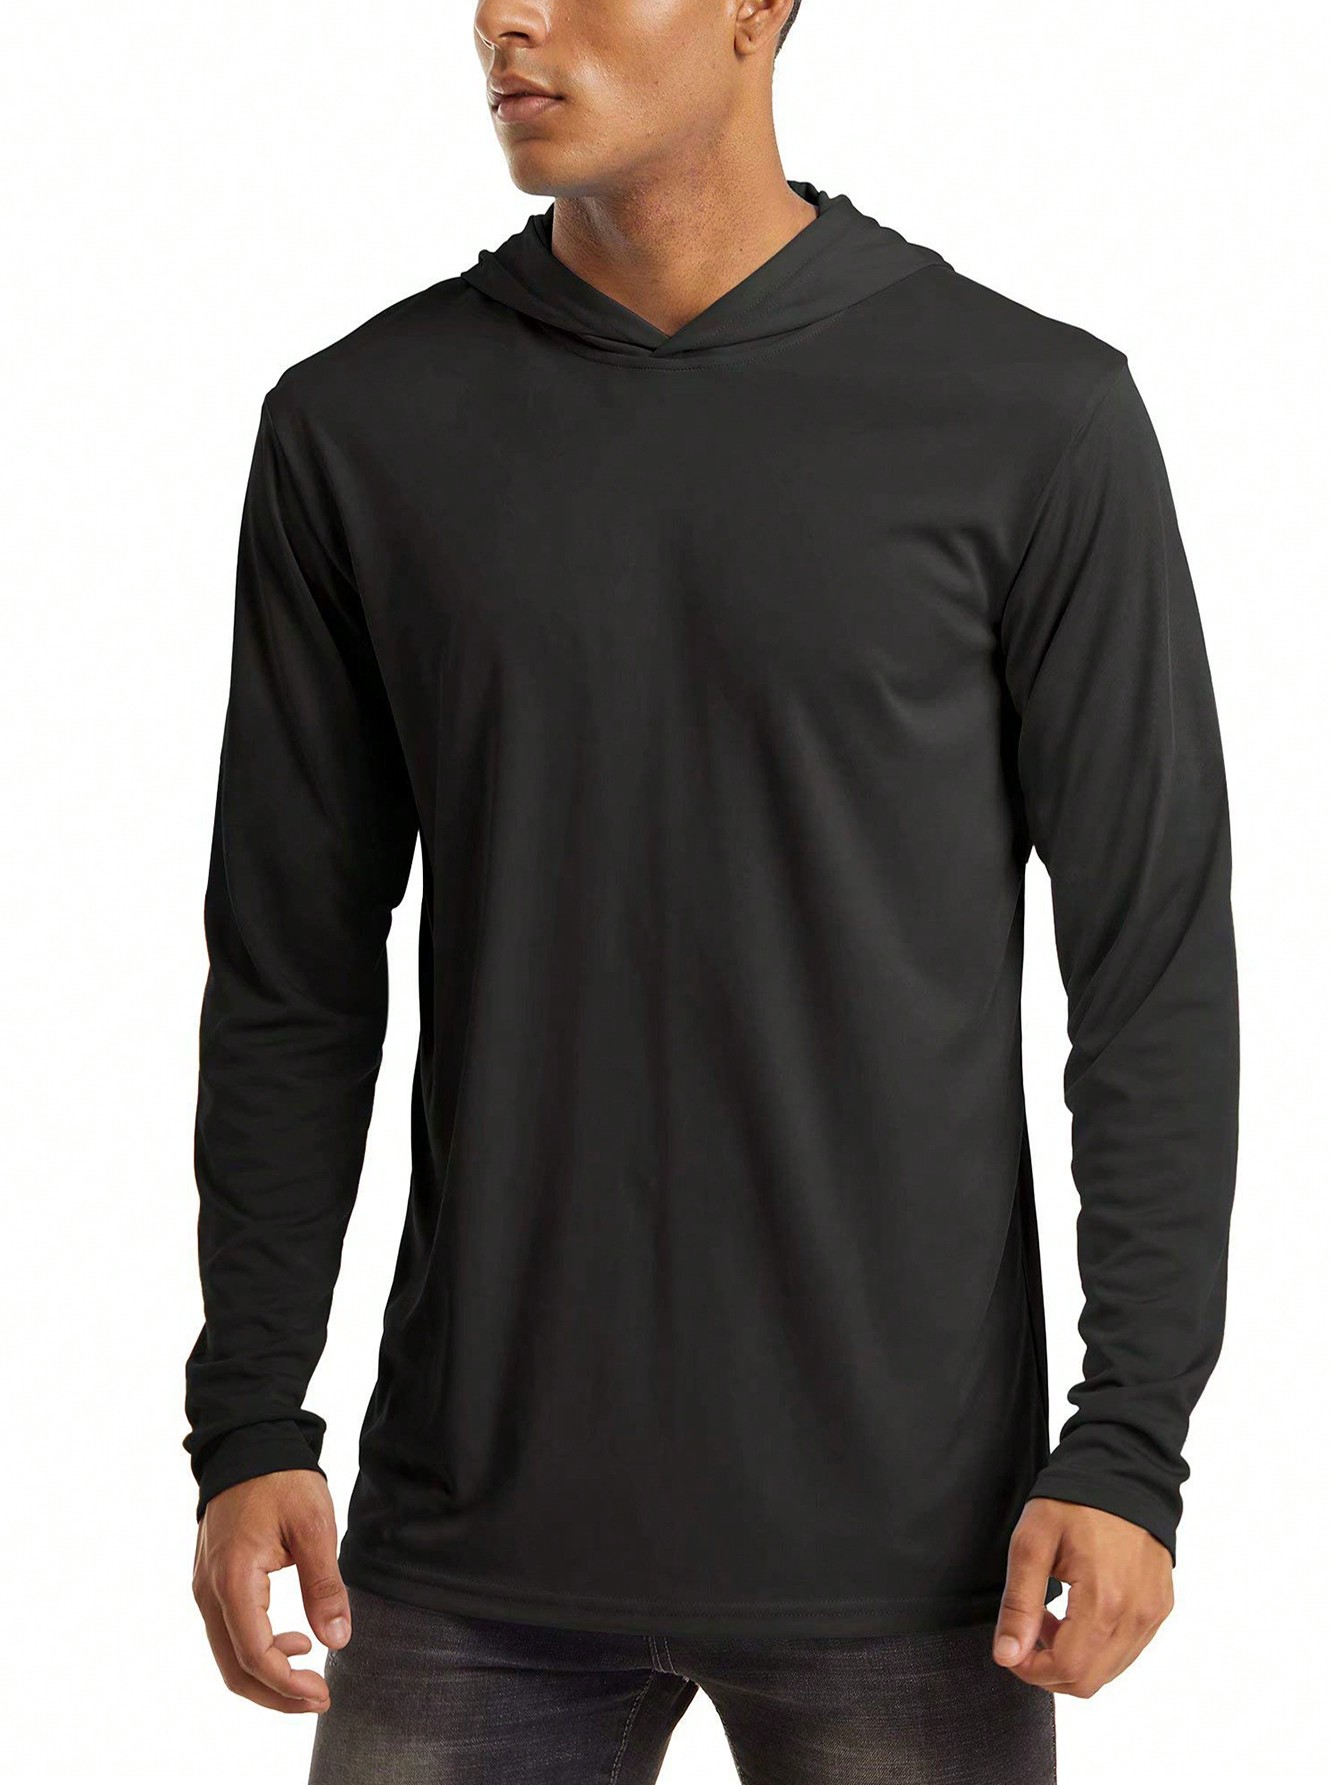 цена NASBING Мужская быстросохнущая спортивная футболка с капюшоном, черный